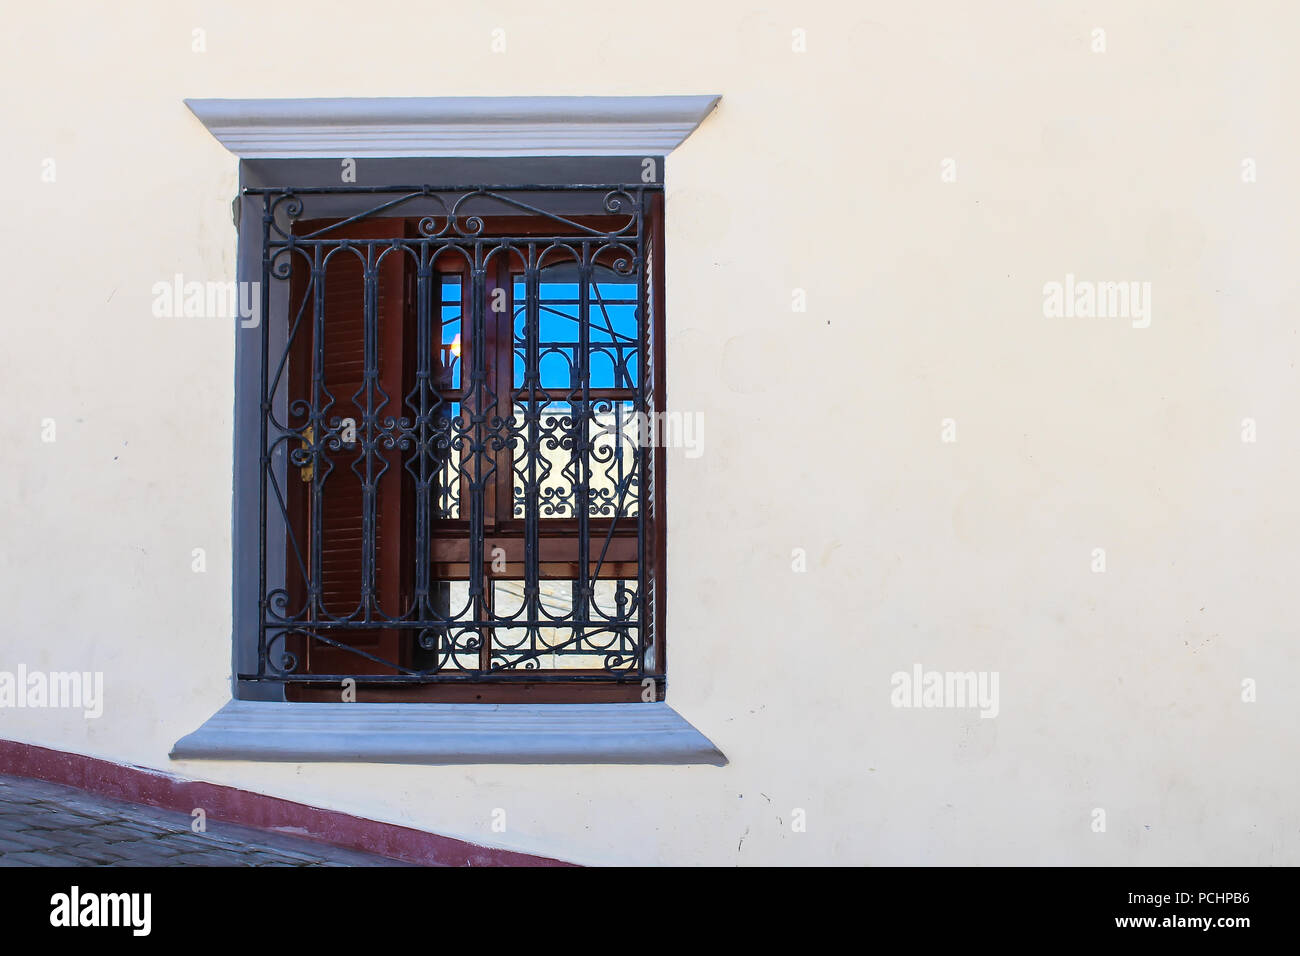 Façade renouvelé d'une maison traditionnelle. Fenêtre avec un reflet dans la vitre. Grille ouvragée traditionnels. Patrimoine portugais à El Jadida, Maroc. Banque D'Images